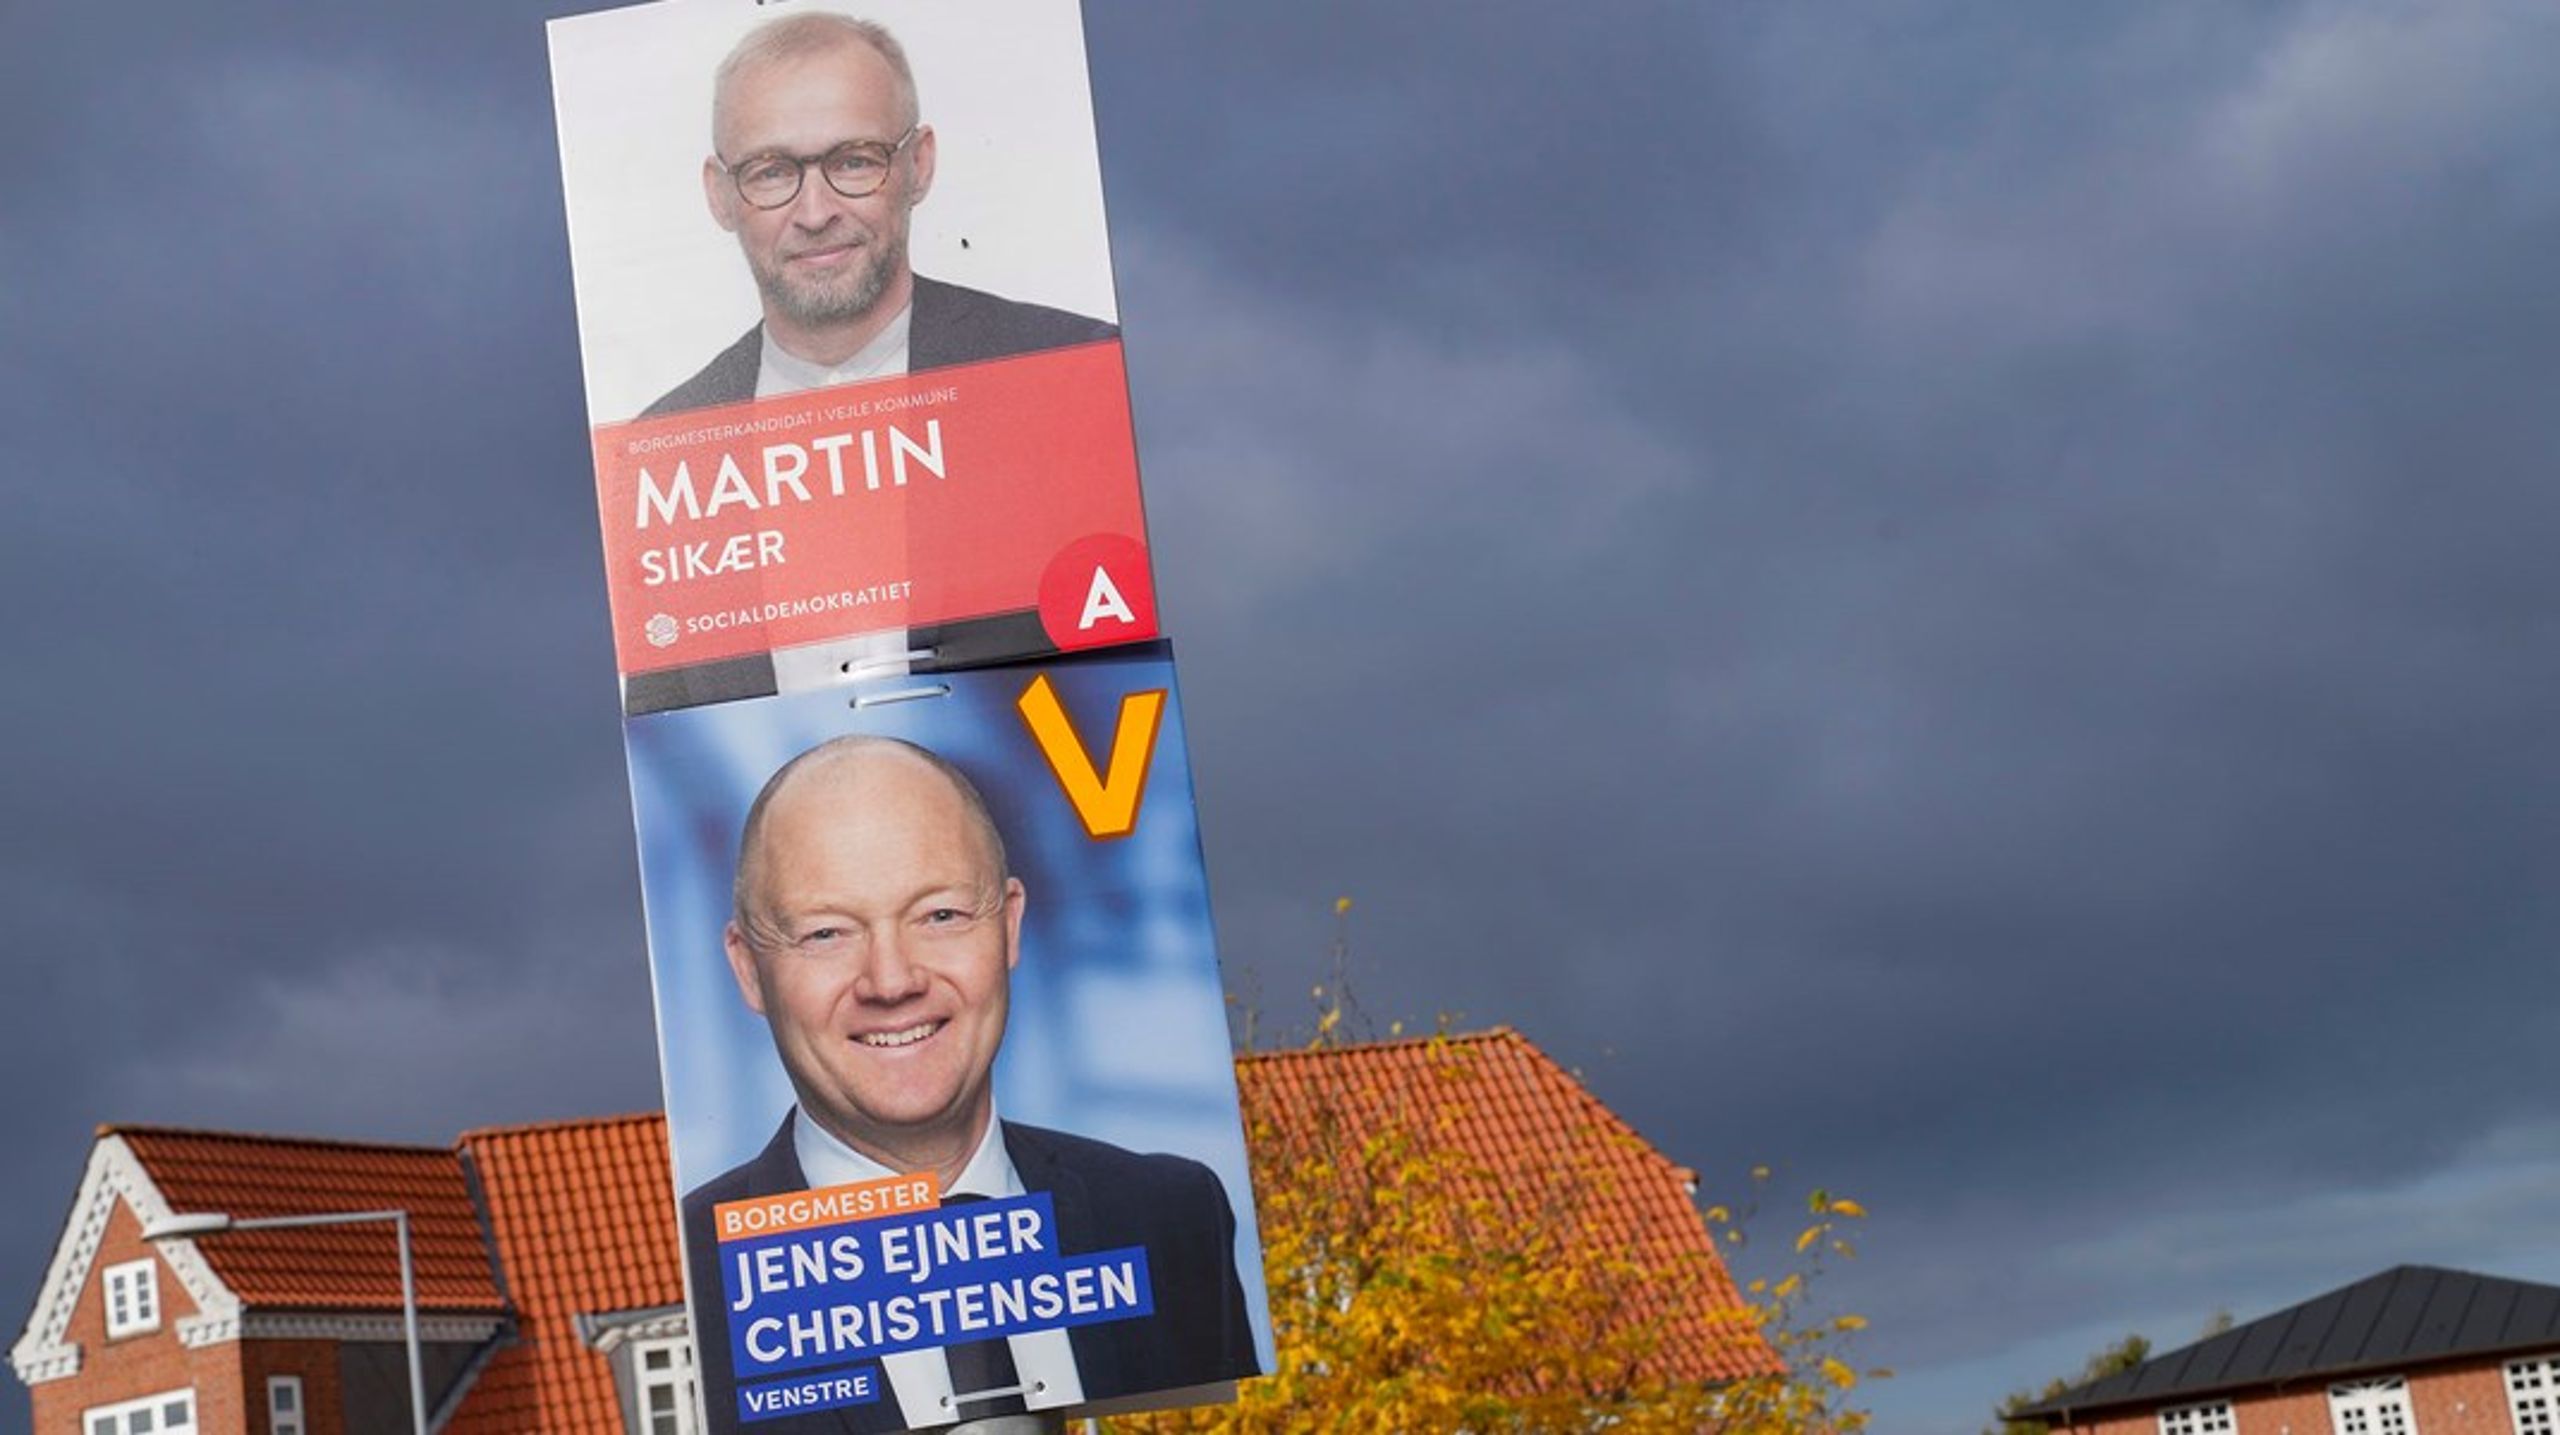 I Vejle Kommune udfordres den siddende borgmester, Jens Ejner Christensen, af&nbsp; socialdemokraten Martin Sikær, som har&nbsp;landspolitisk medvind. Magten kan skifte, lyder det fra erfaren Vejles mest erfarne politiske journalist.&nbsp;